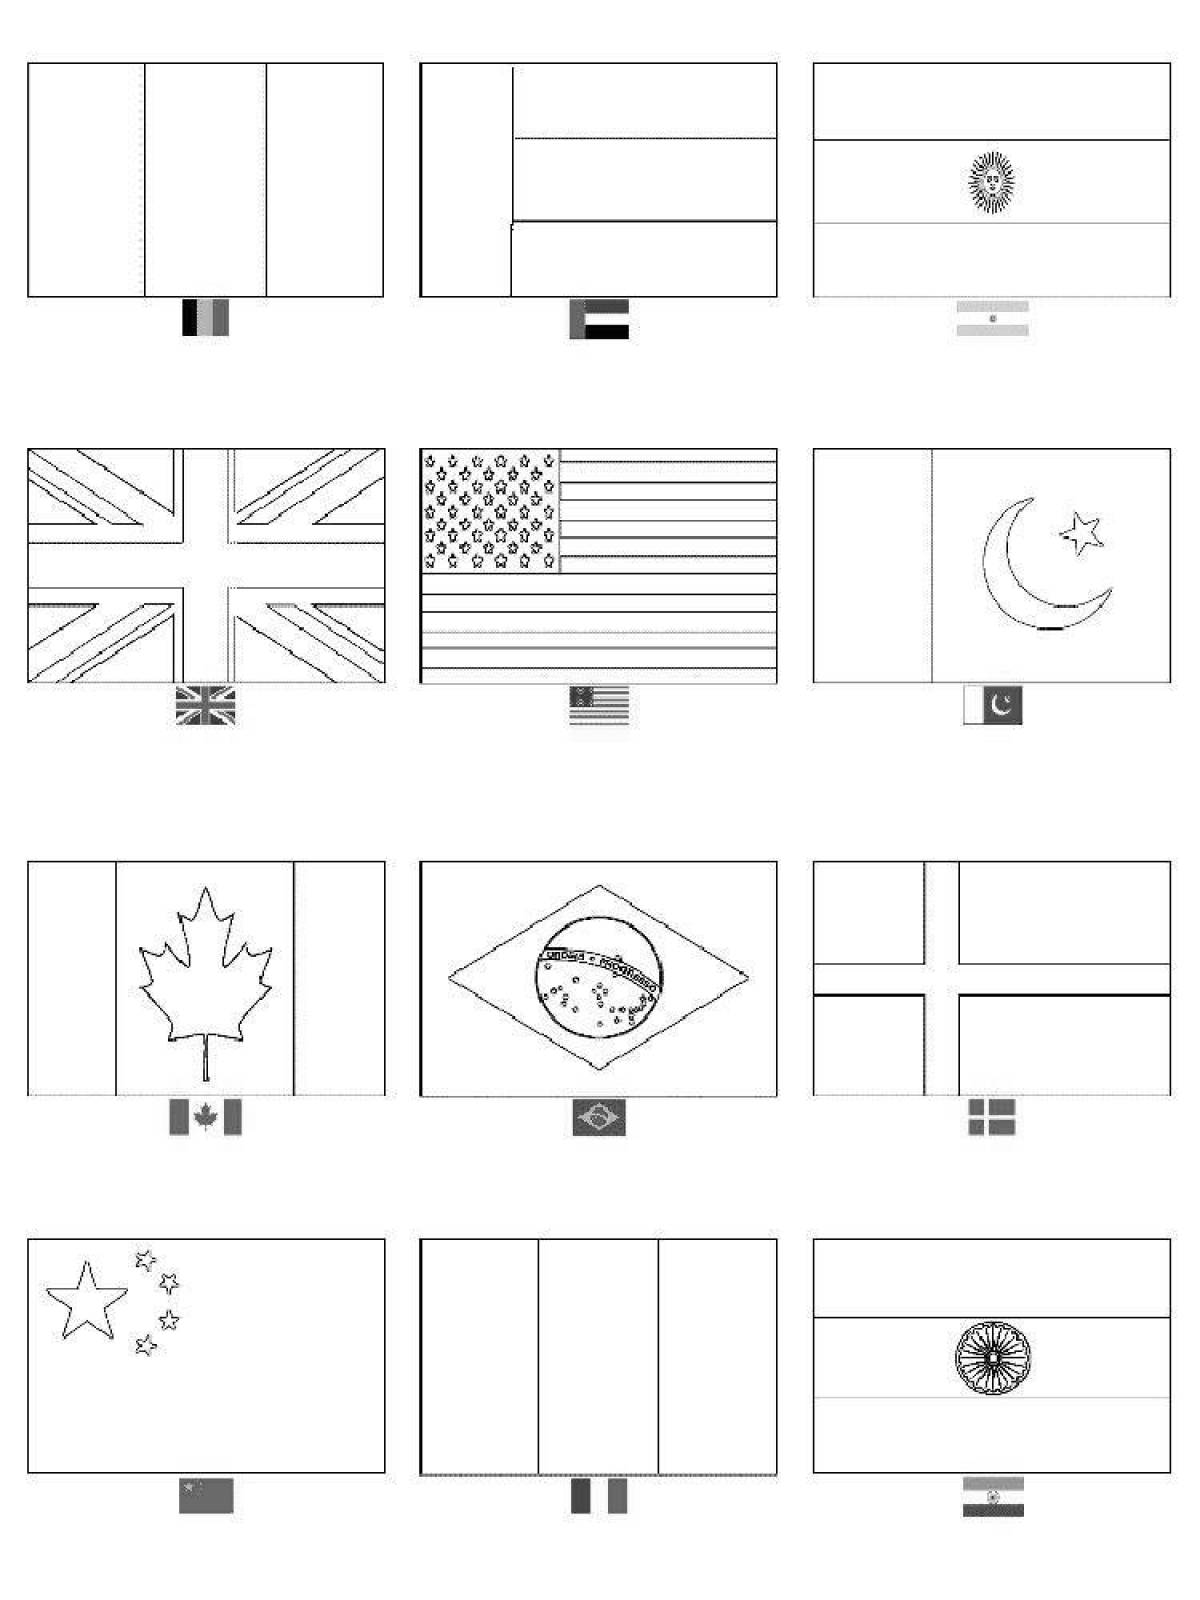 Флаги стран мира (2 часть) — раскраска